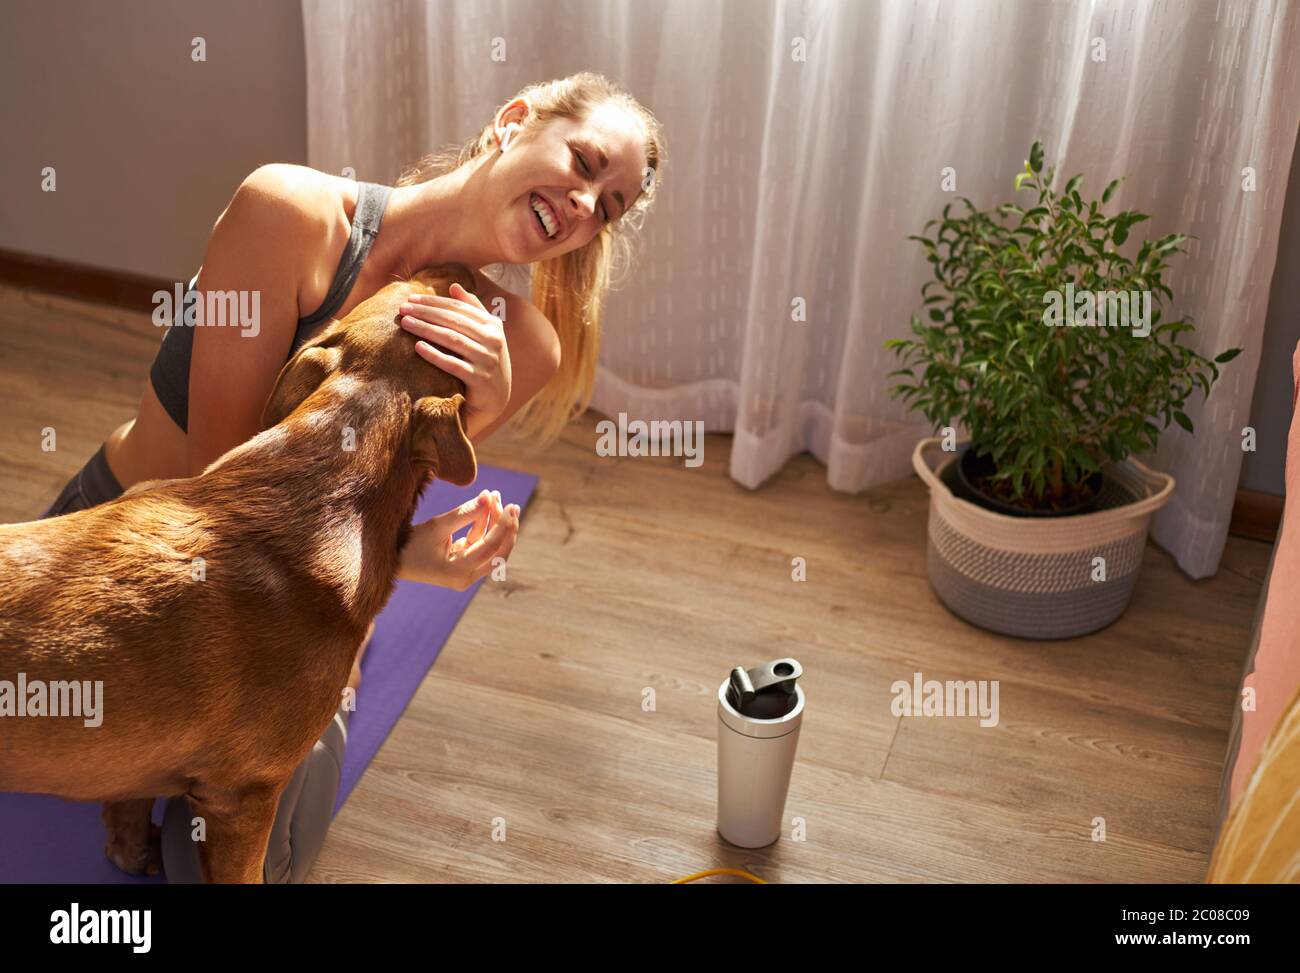 Junge Frau spielt mit Haustier Hund während der Versuch, Training. Stockfoto